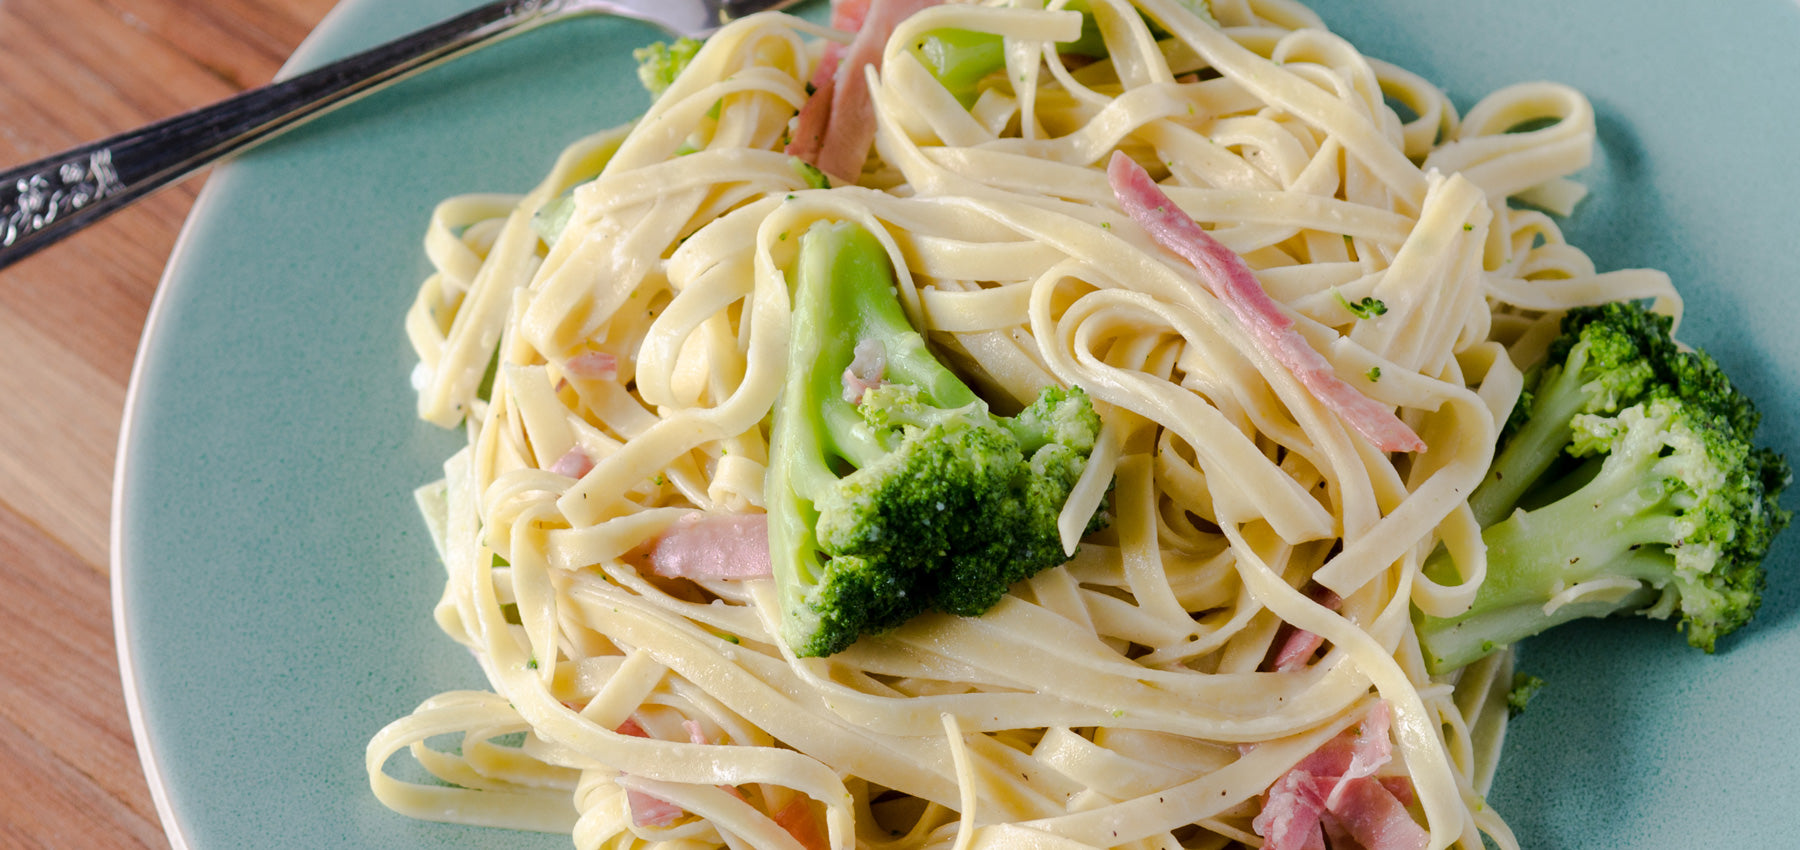 Pasta Luce Linguine with Broccoli and Prosciutto